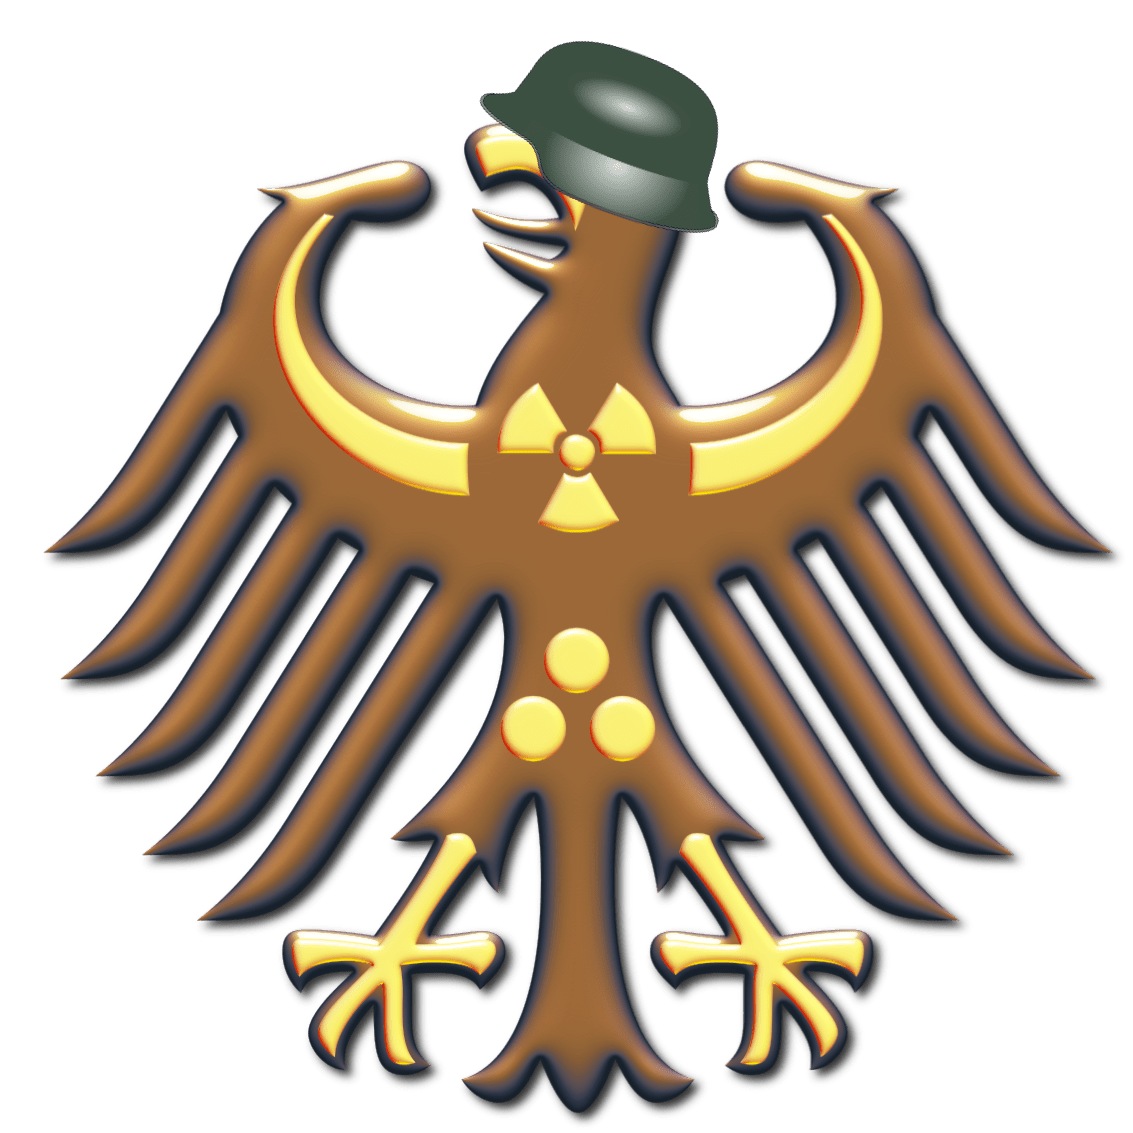 Bundeswehr braun Bundesadler Adler mit Helm rechtsruck Bundesregierung 2018